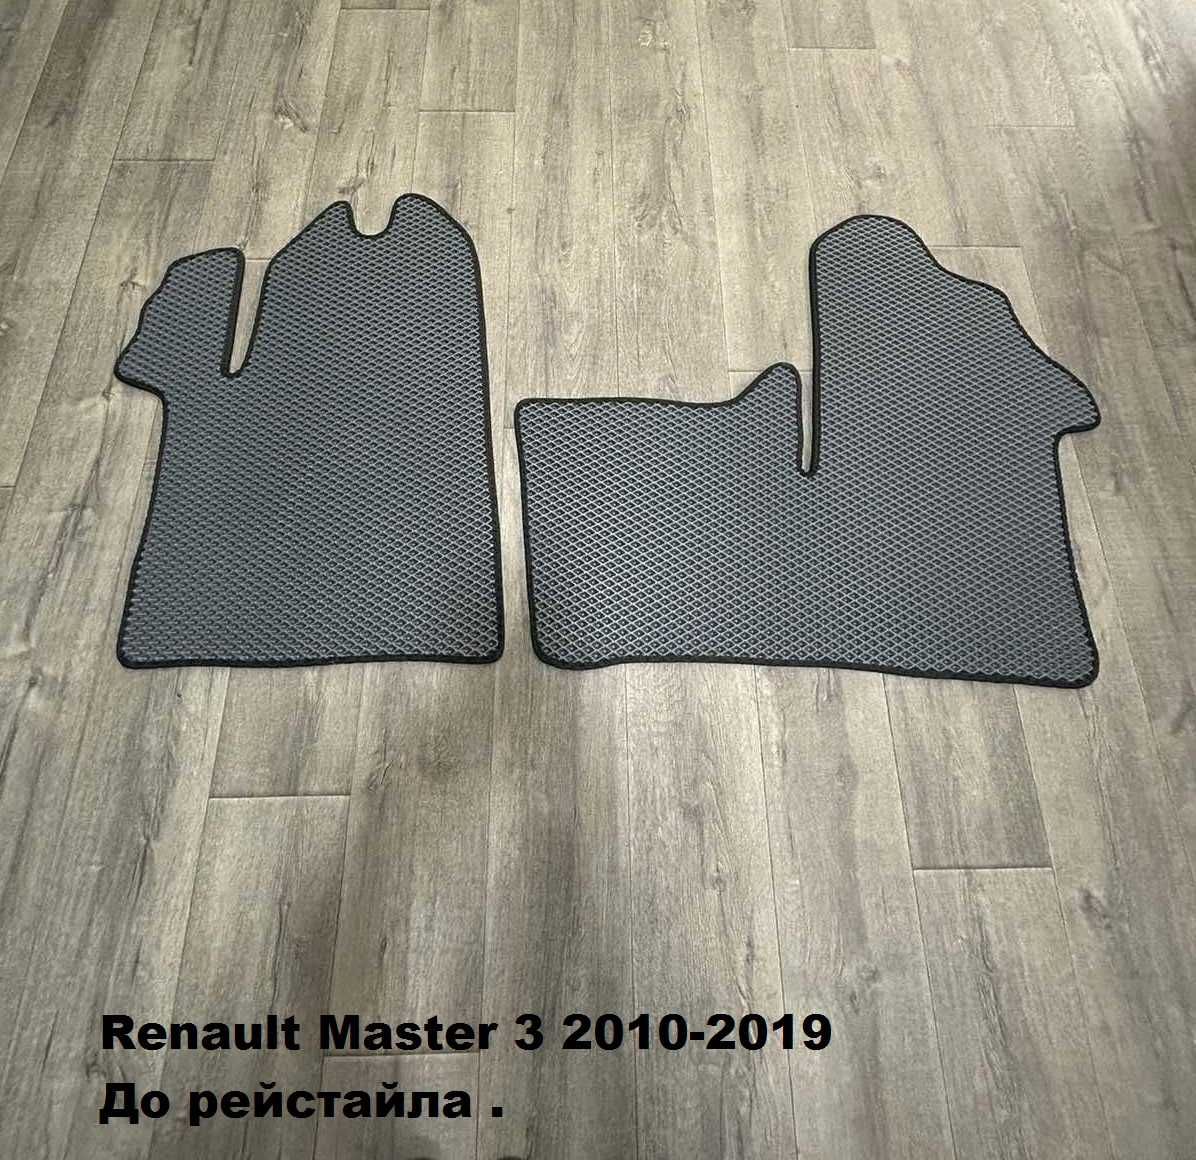 EVA коврики в салон авто Renault Master 2010-2019 и 2019+ рейстайл